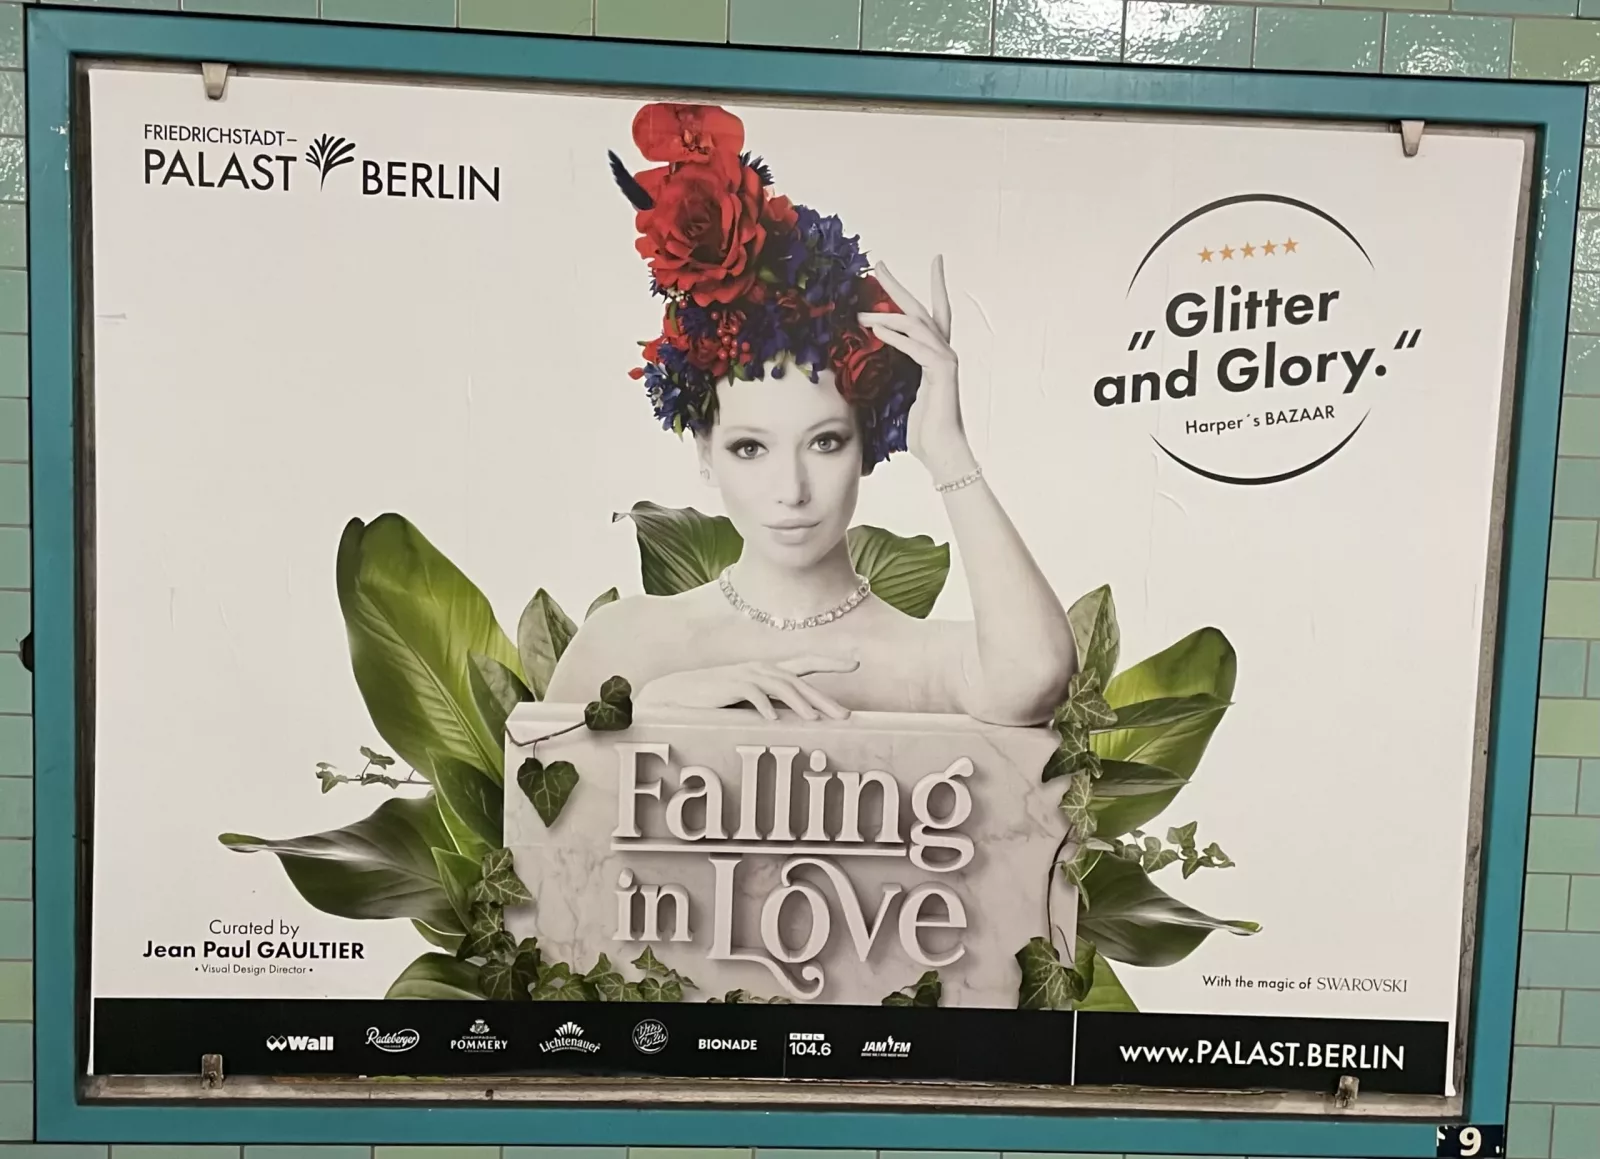 Plakat vom Friedrichstraßenpalast mit der Show ‚Falling in Love‘.